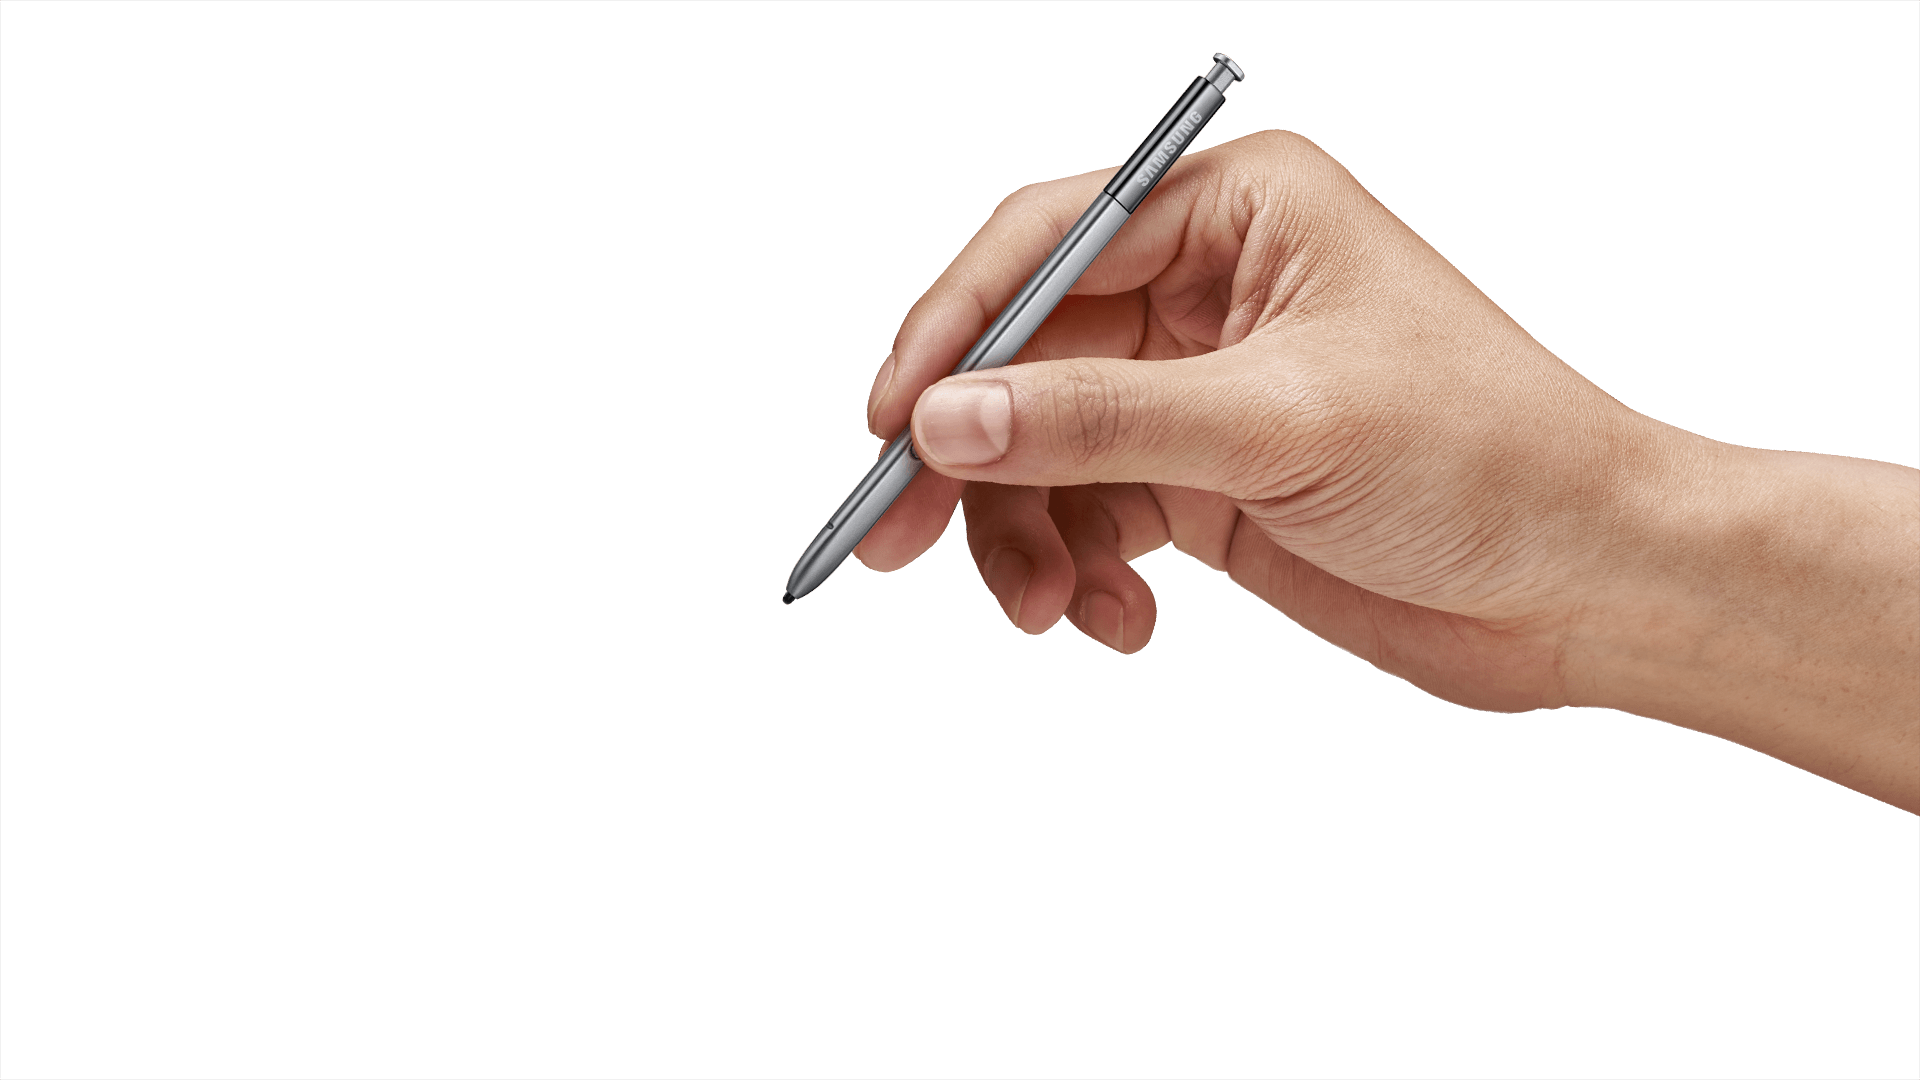 Take your pen. Рука с ручкой. Рука с авторучкой. Руки карандашом. Рука с ручкой на прозрачном фоне.